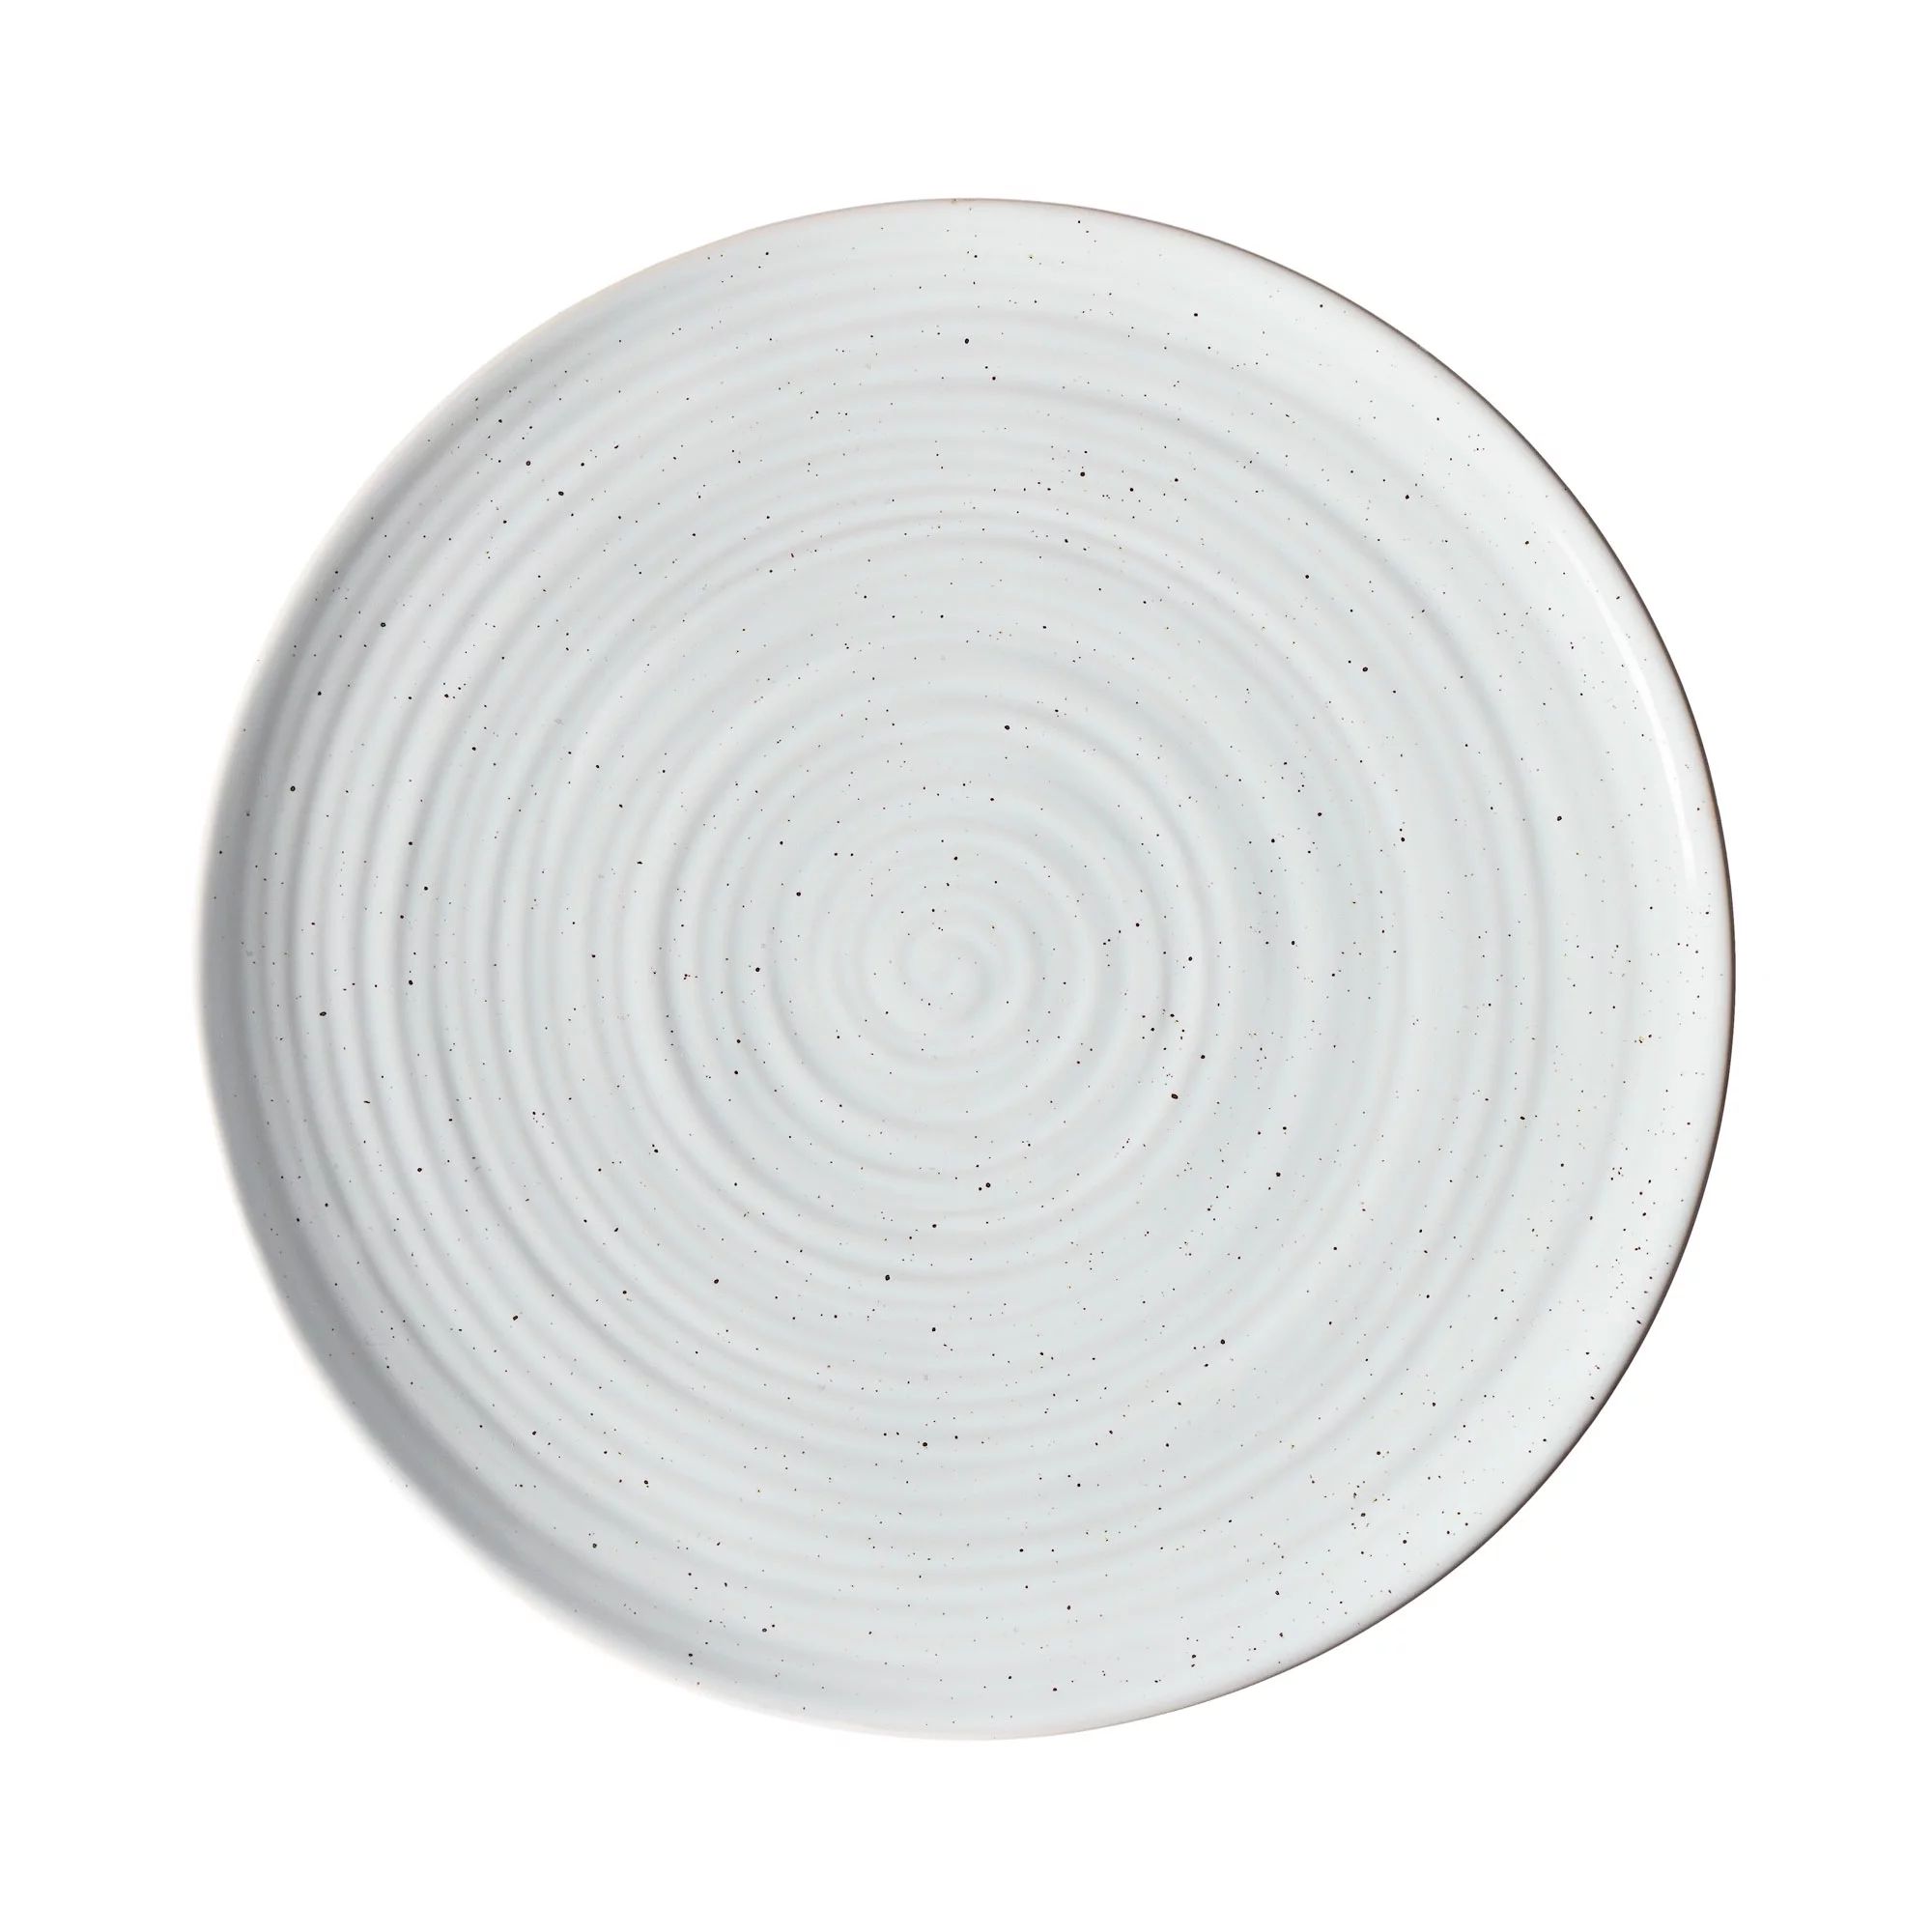 Better Homes & Gardens Abott Stoneware Salad Plate, White Speckled | Walmart (US)